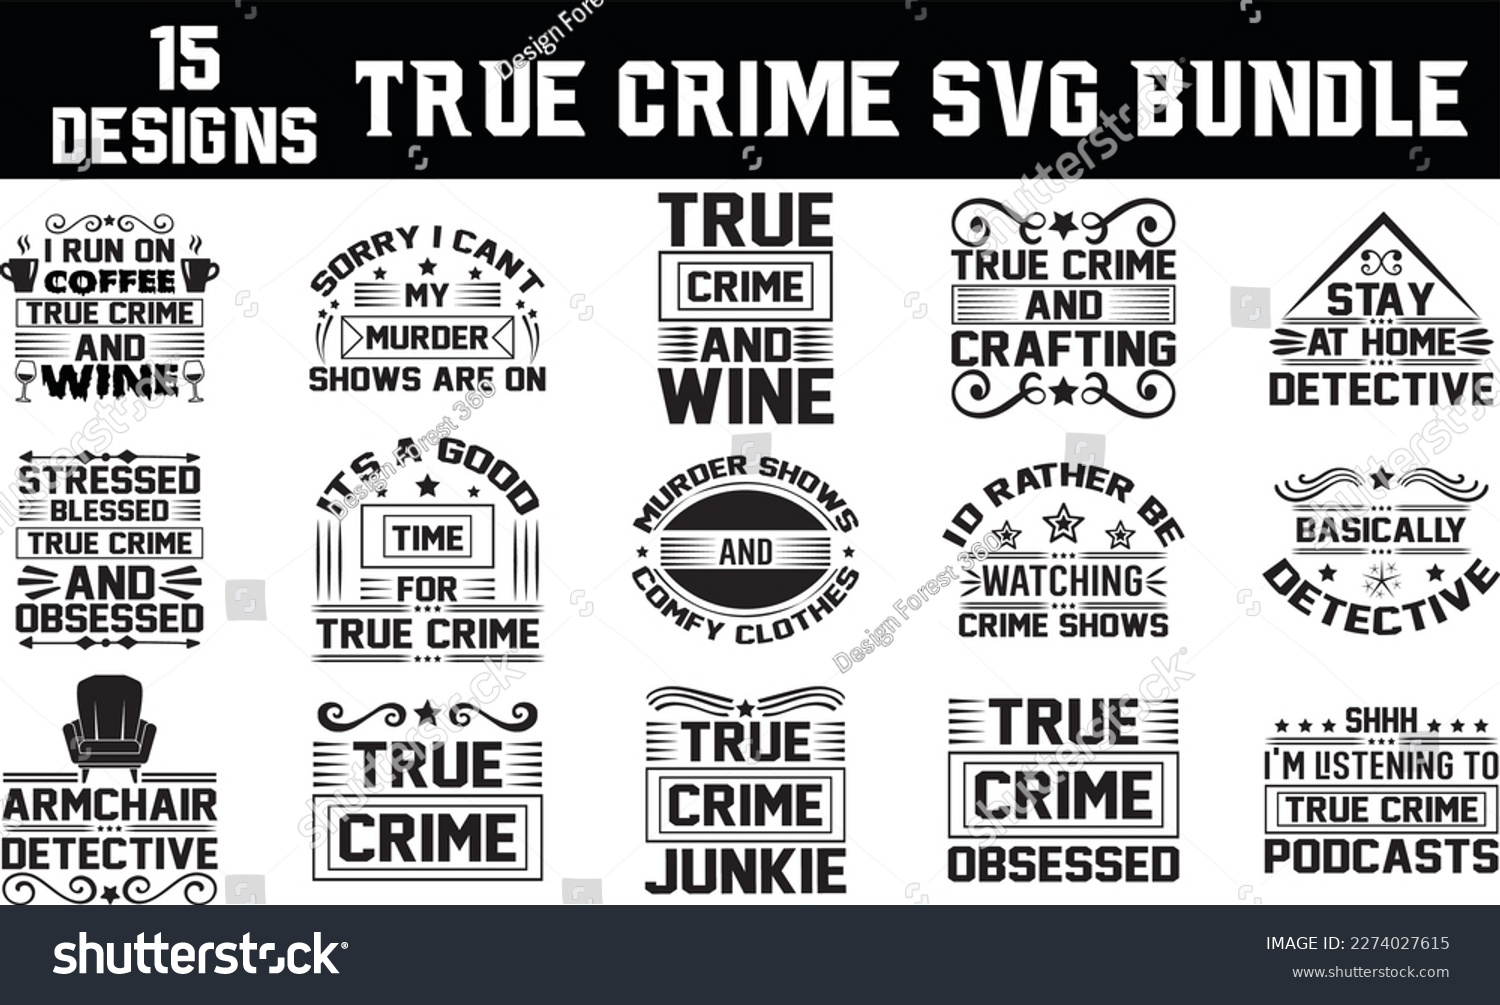 SVG of true crime svg bundle, true crime svg design svg